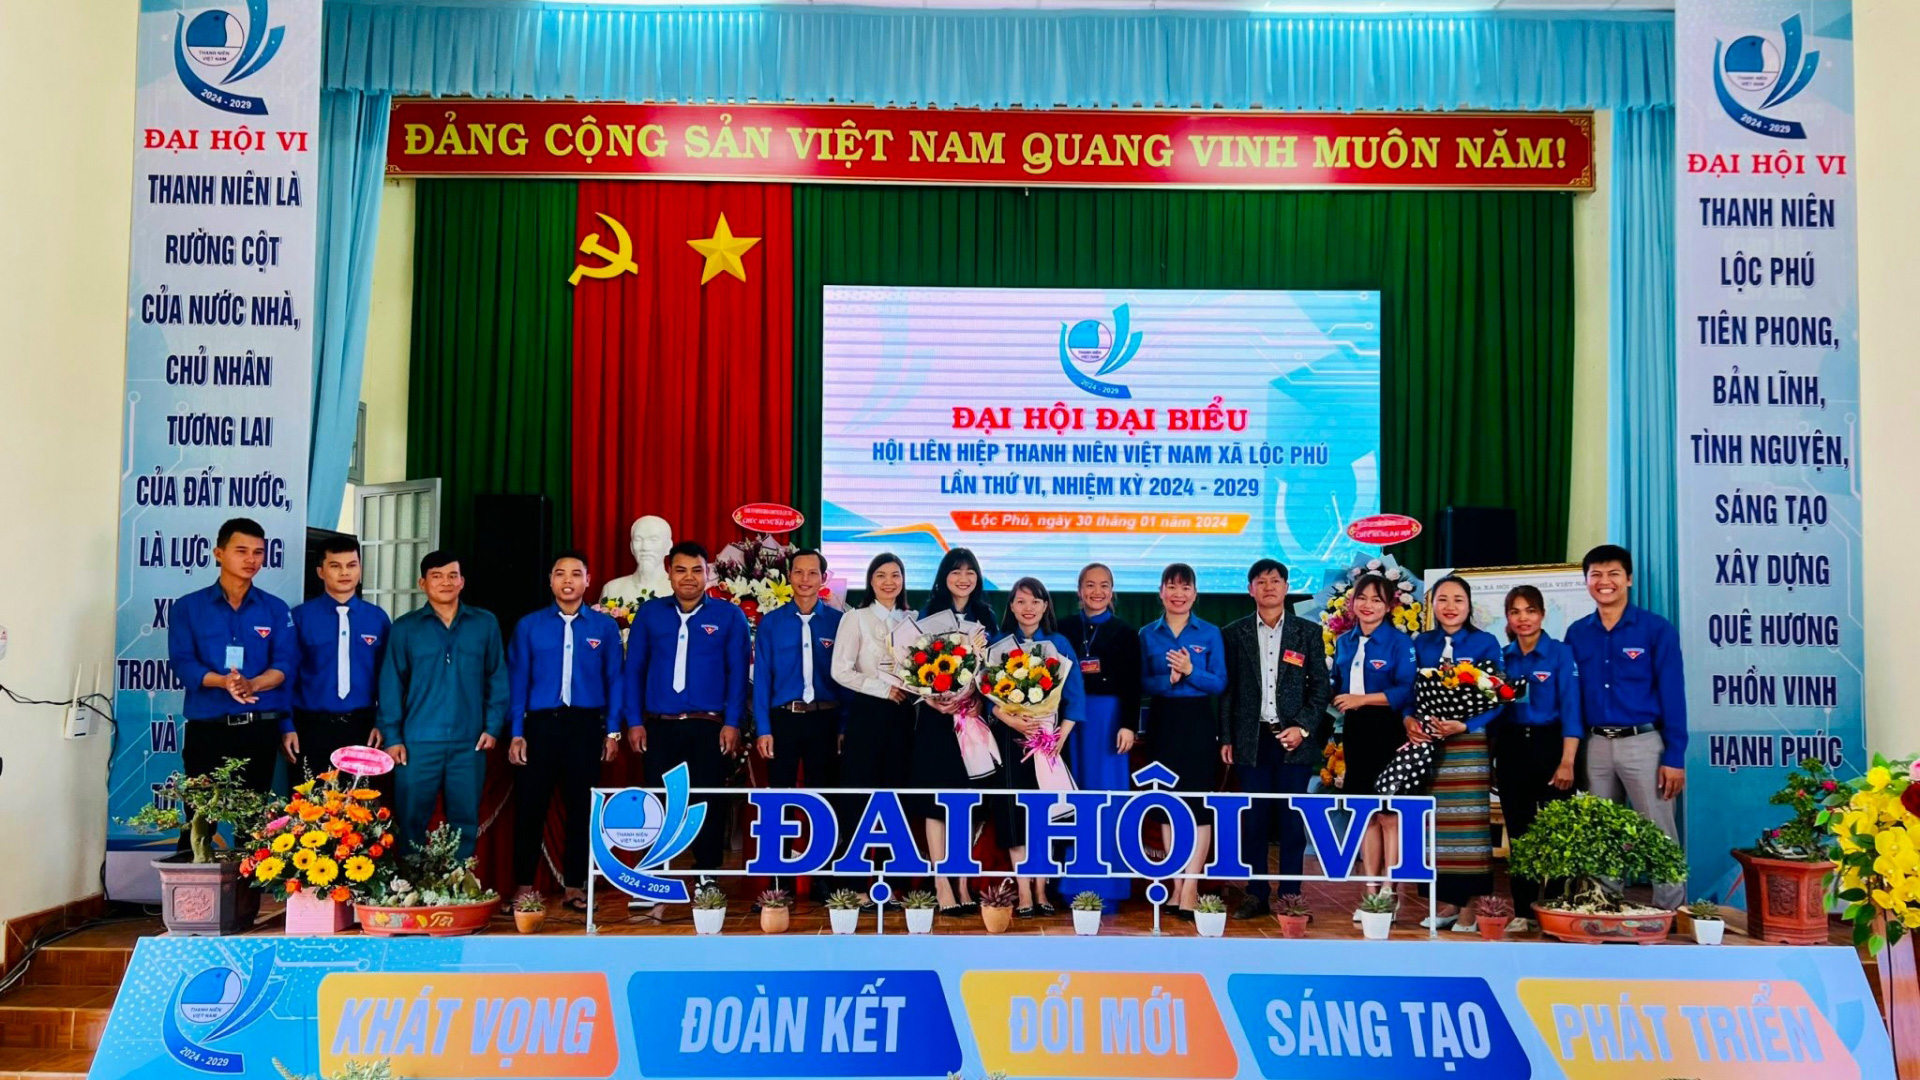 Bảo Lâm: Hội Liên hiệp Thanh niên xã Lộc Phú tổ chức thành công đại hội điểm